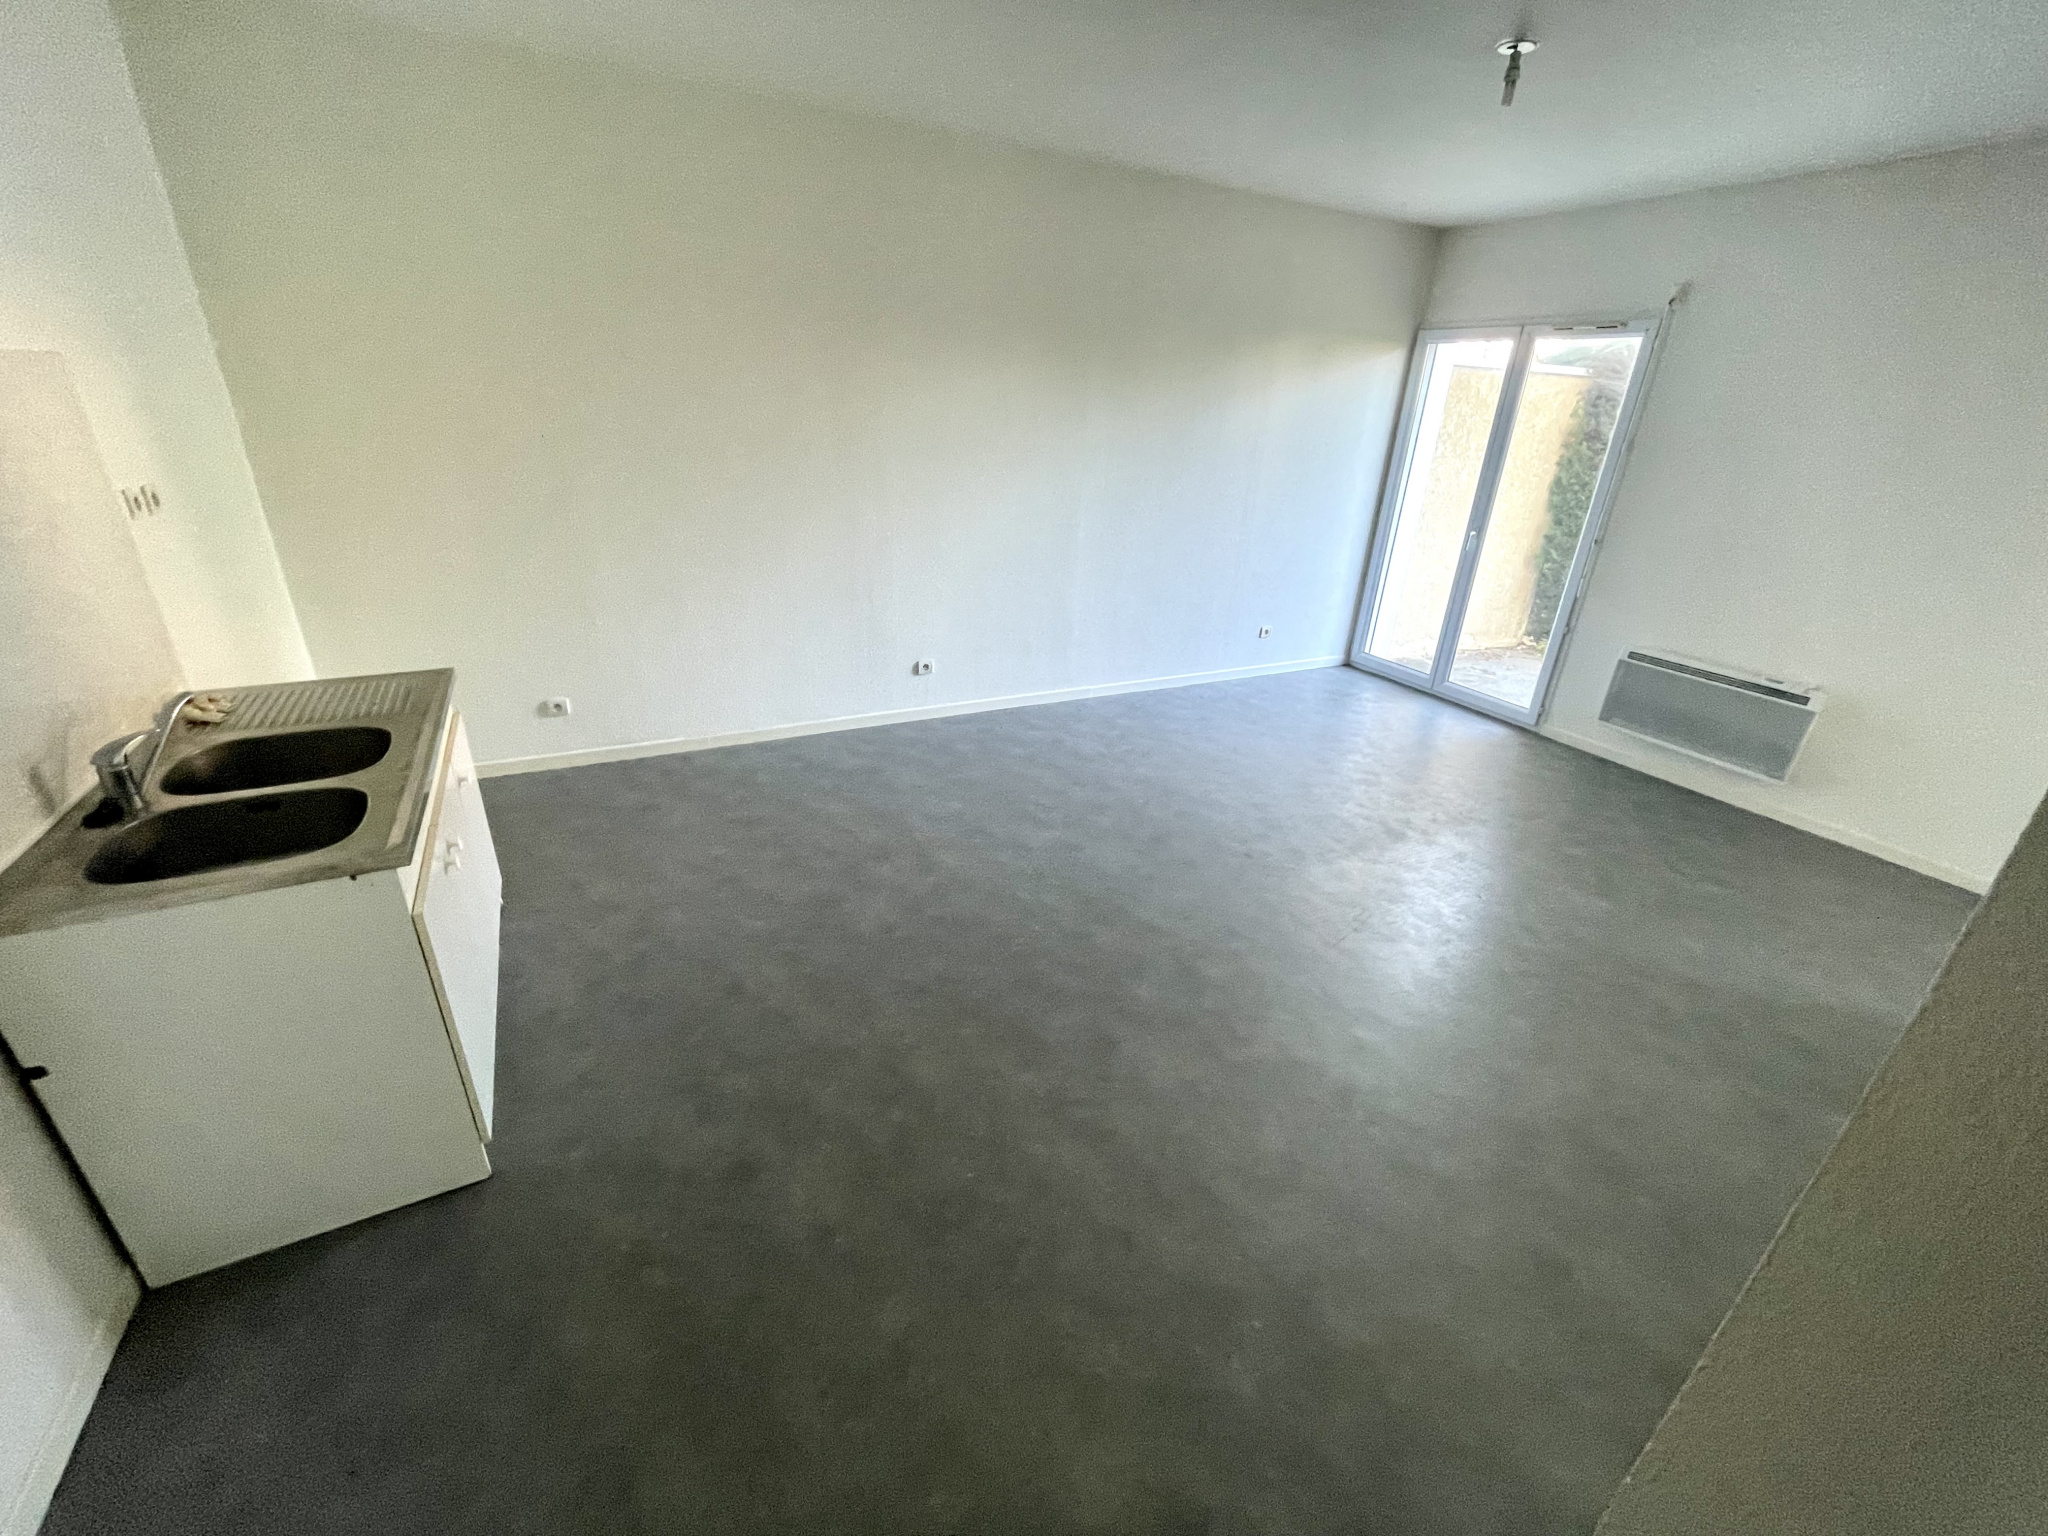 Appartement Type 2 de 39,54 m2 VENDU LE 17/01/2022